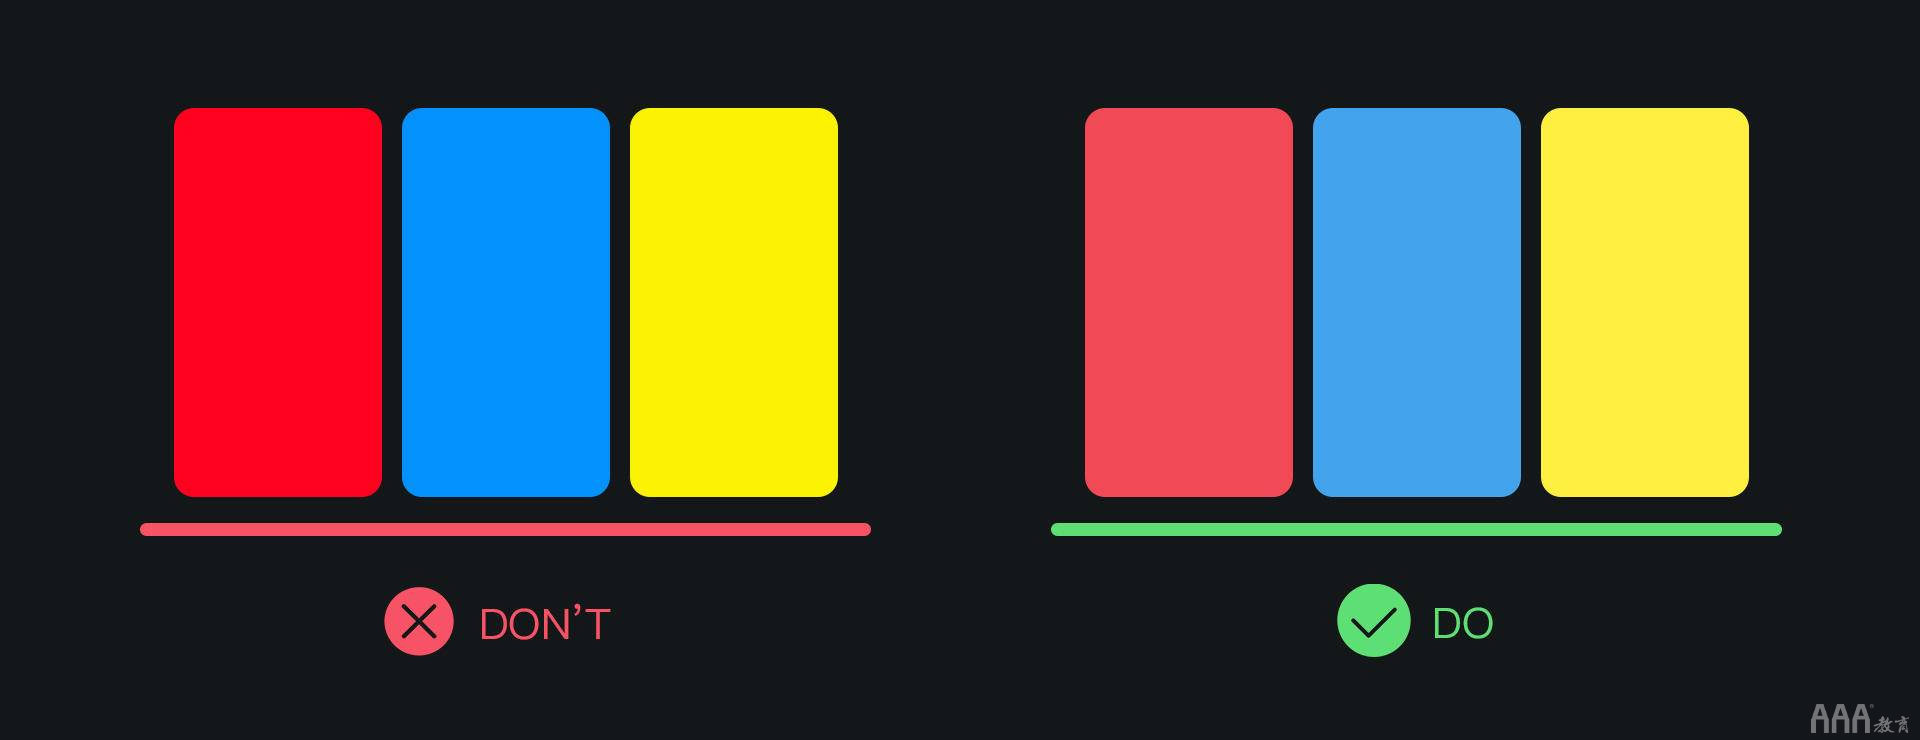 UI设计色彩趋势总结